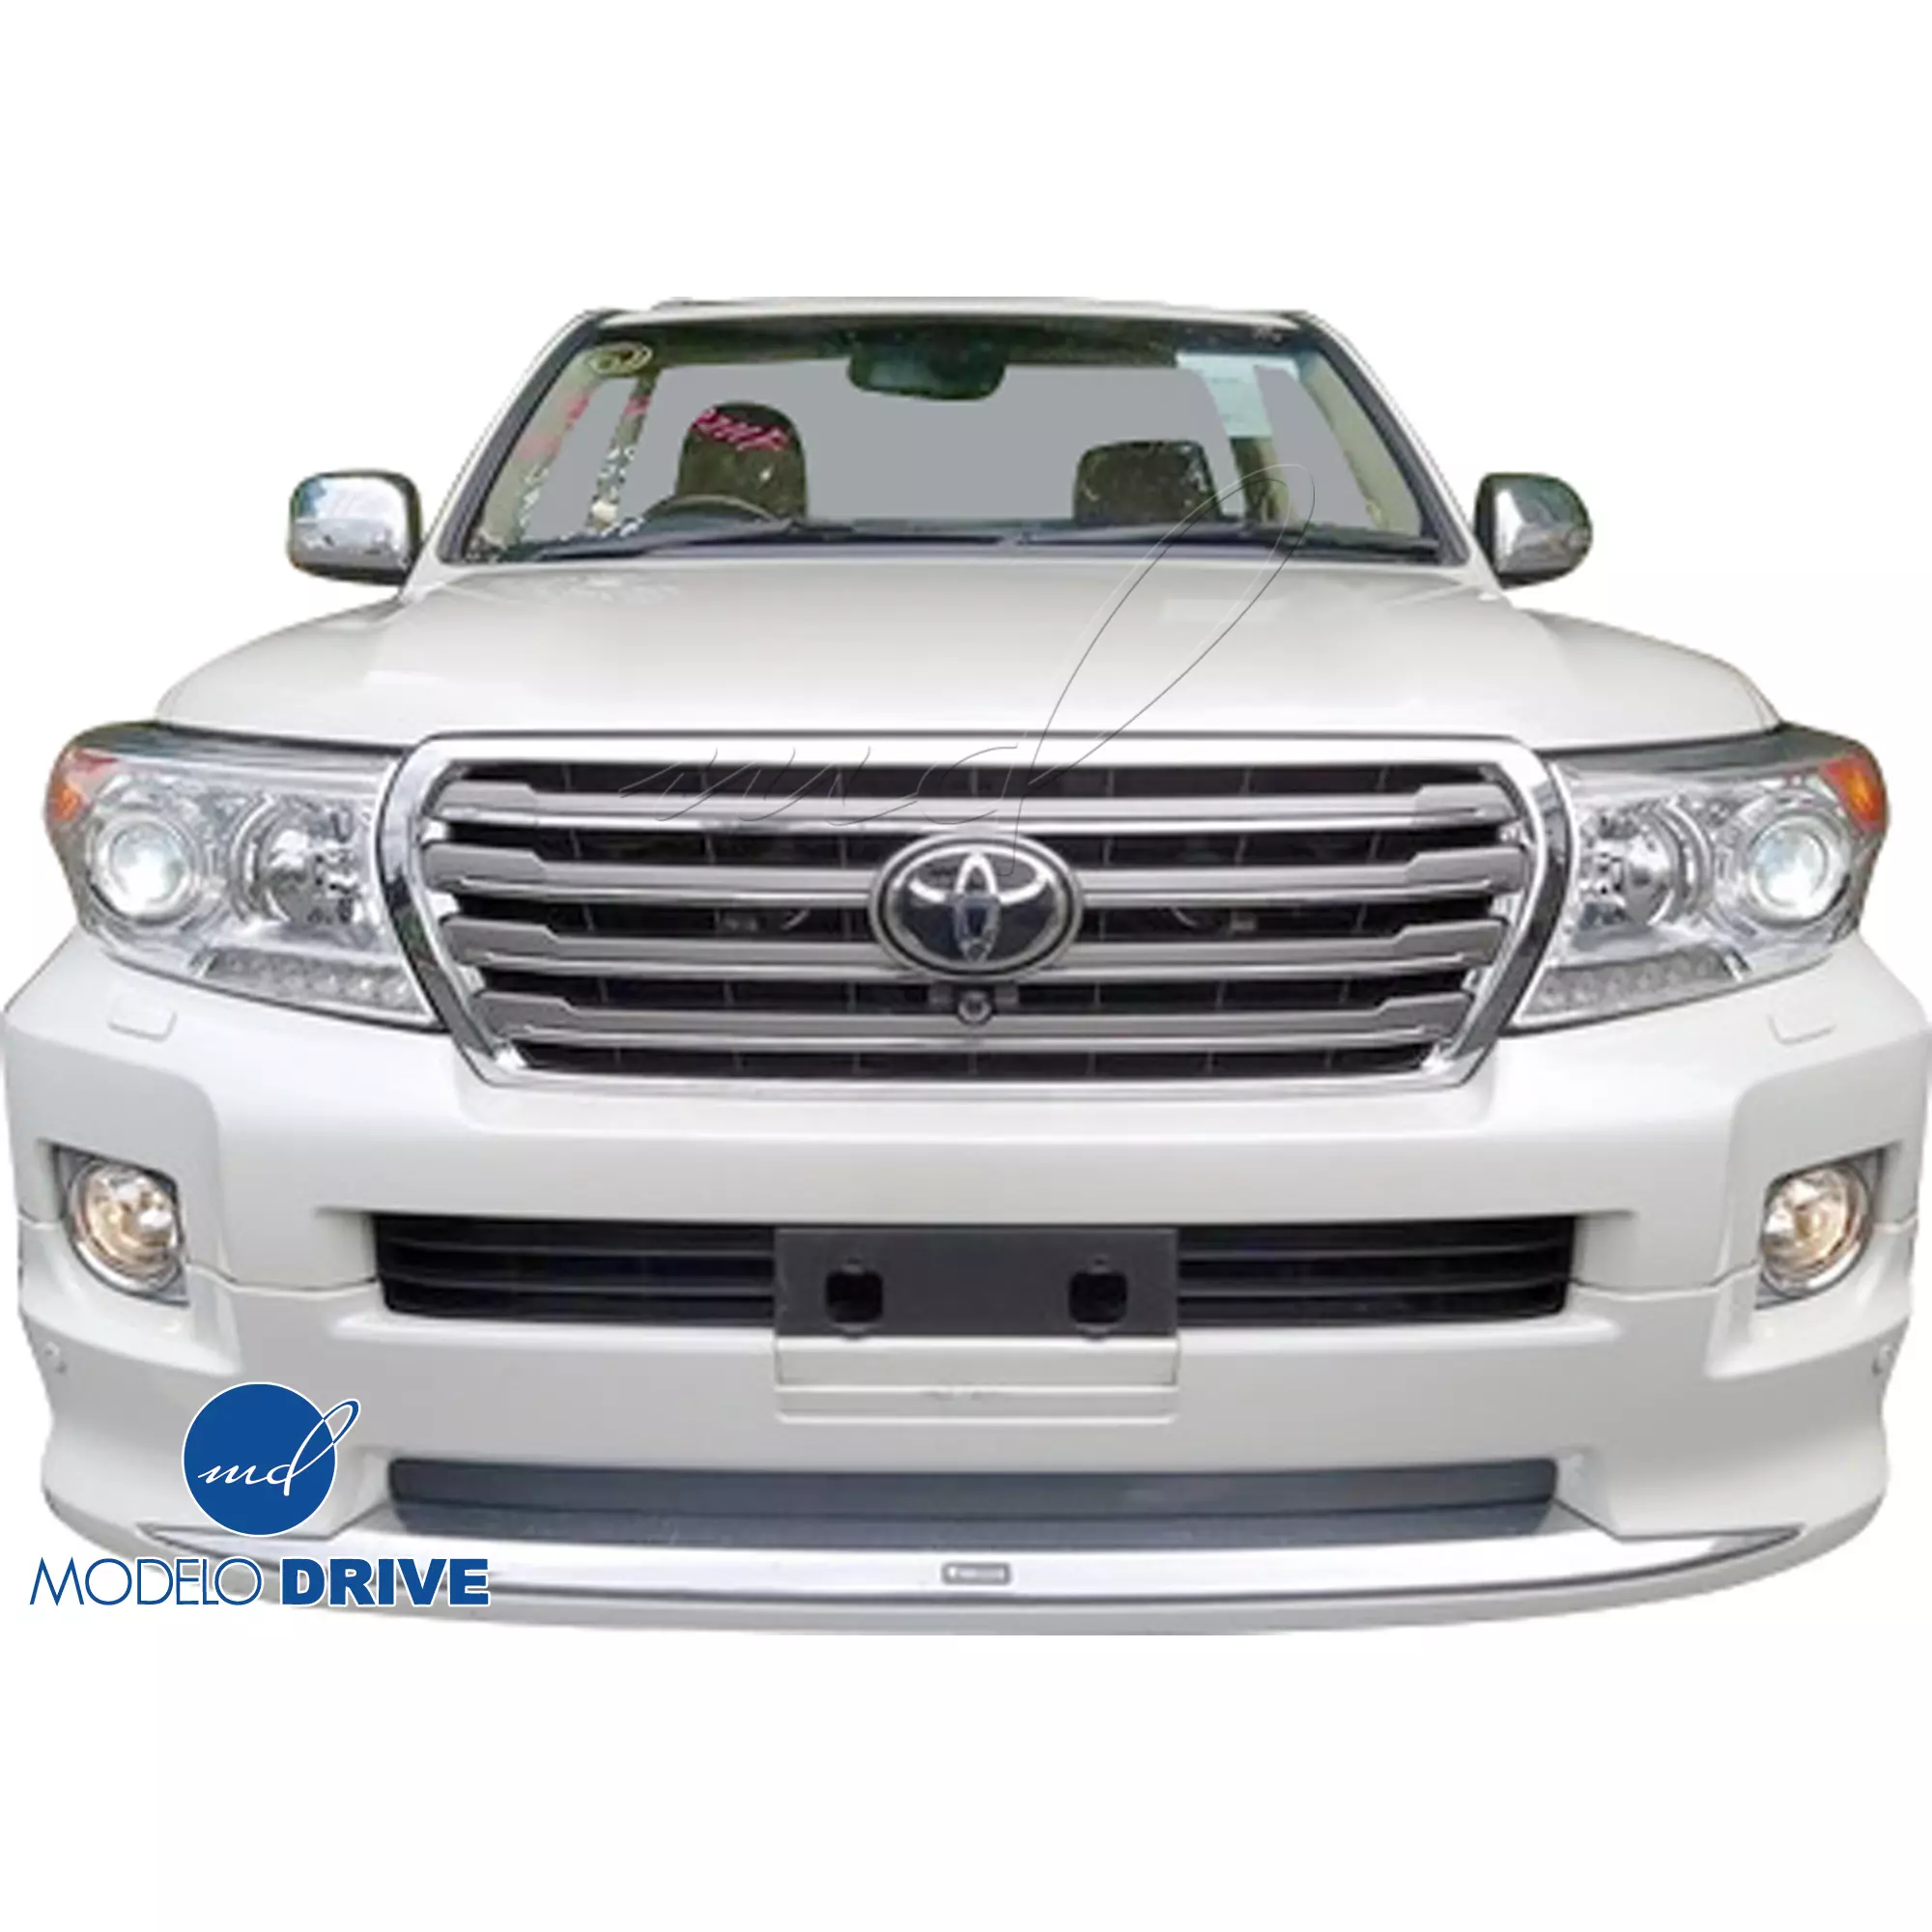 ModeloDrive FRP MODE Body Kit > Toyota Land Cruiser VDJ200 2012-2015 - Image 5